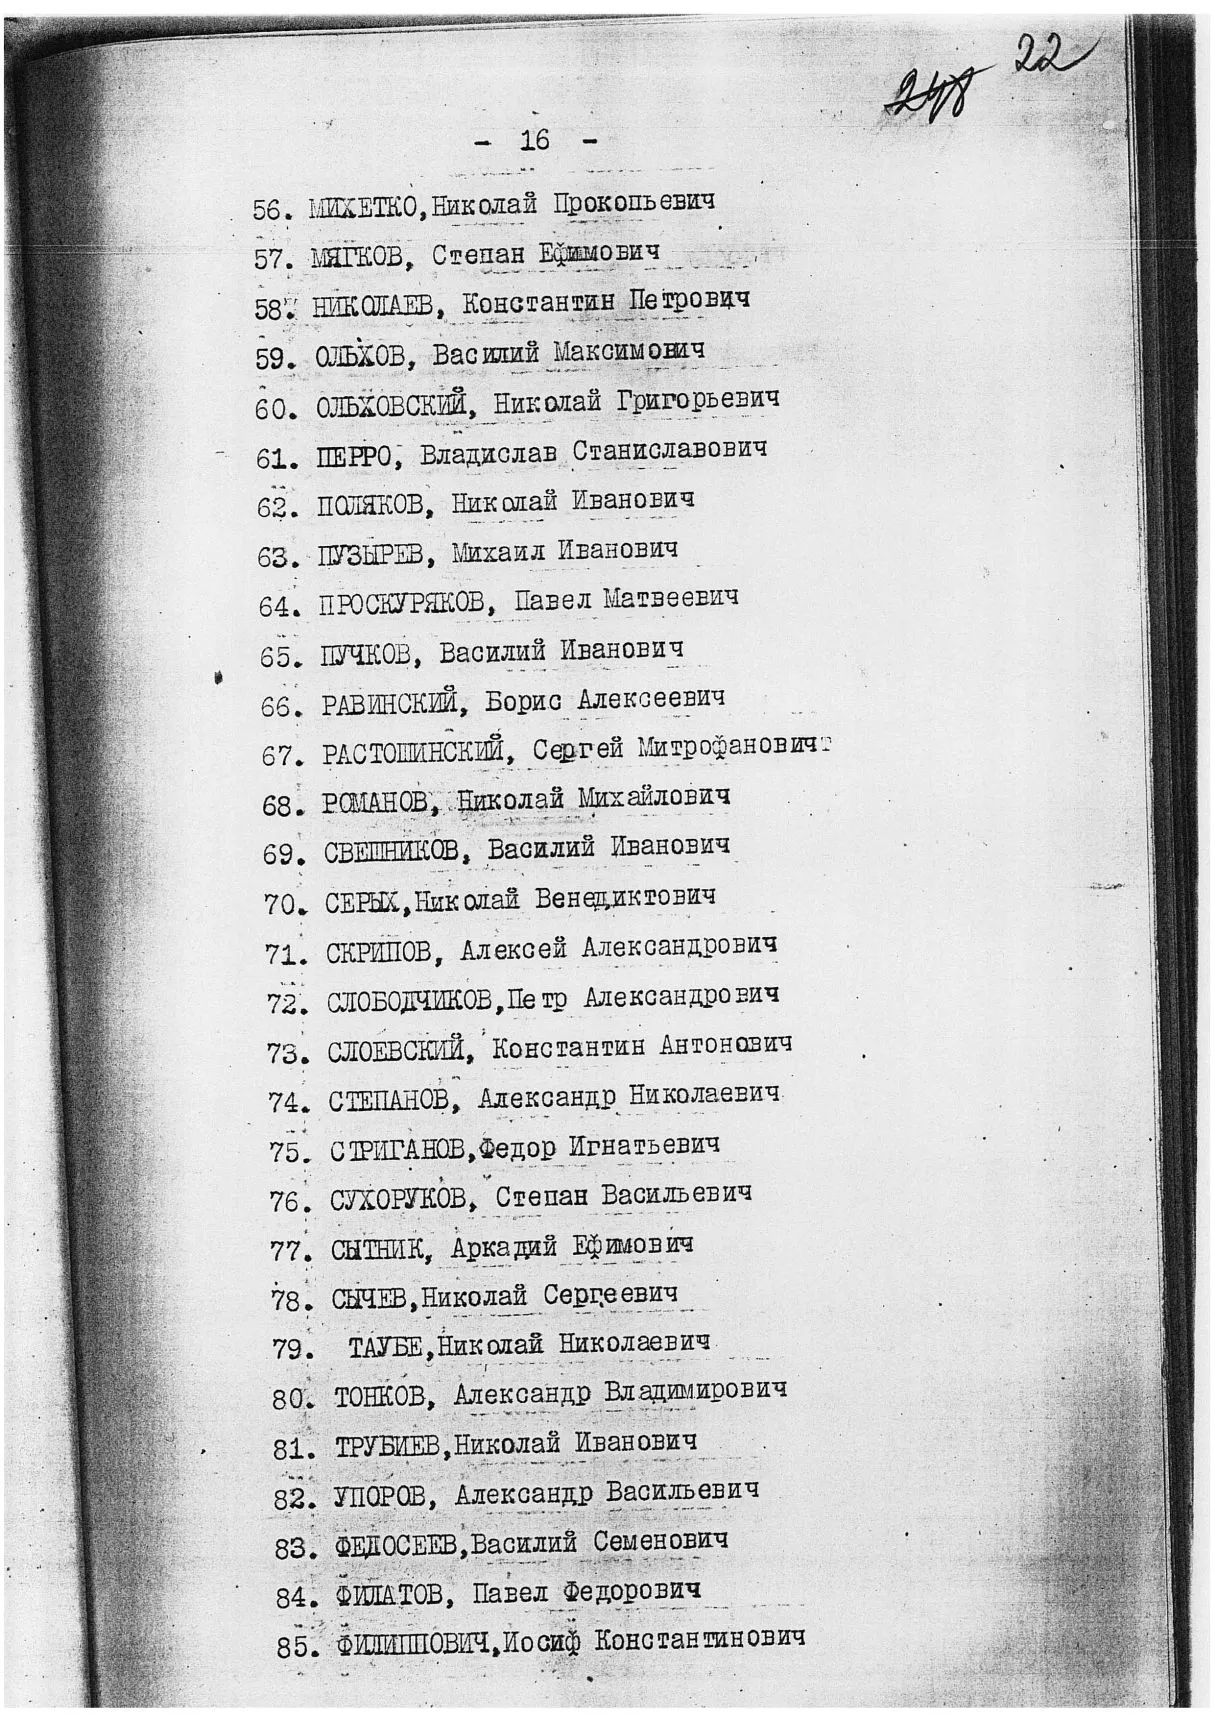 Сталинские списки: список лиц от 27 февраля 1937 года. Москва-центр и еще 13 регионов